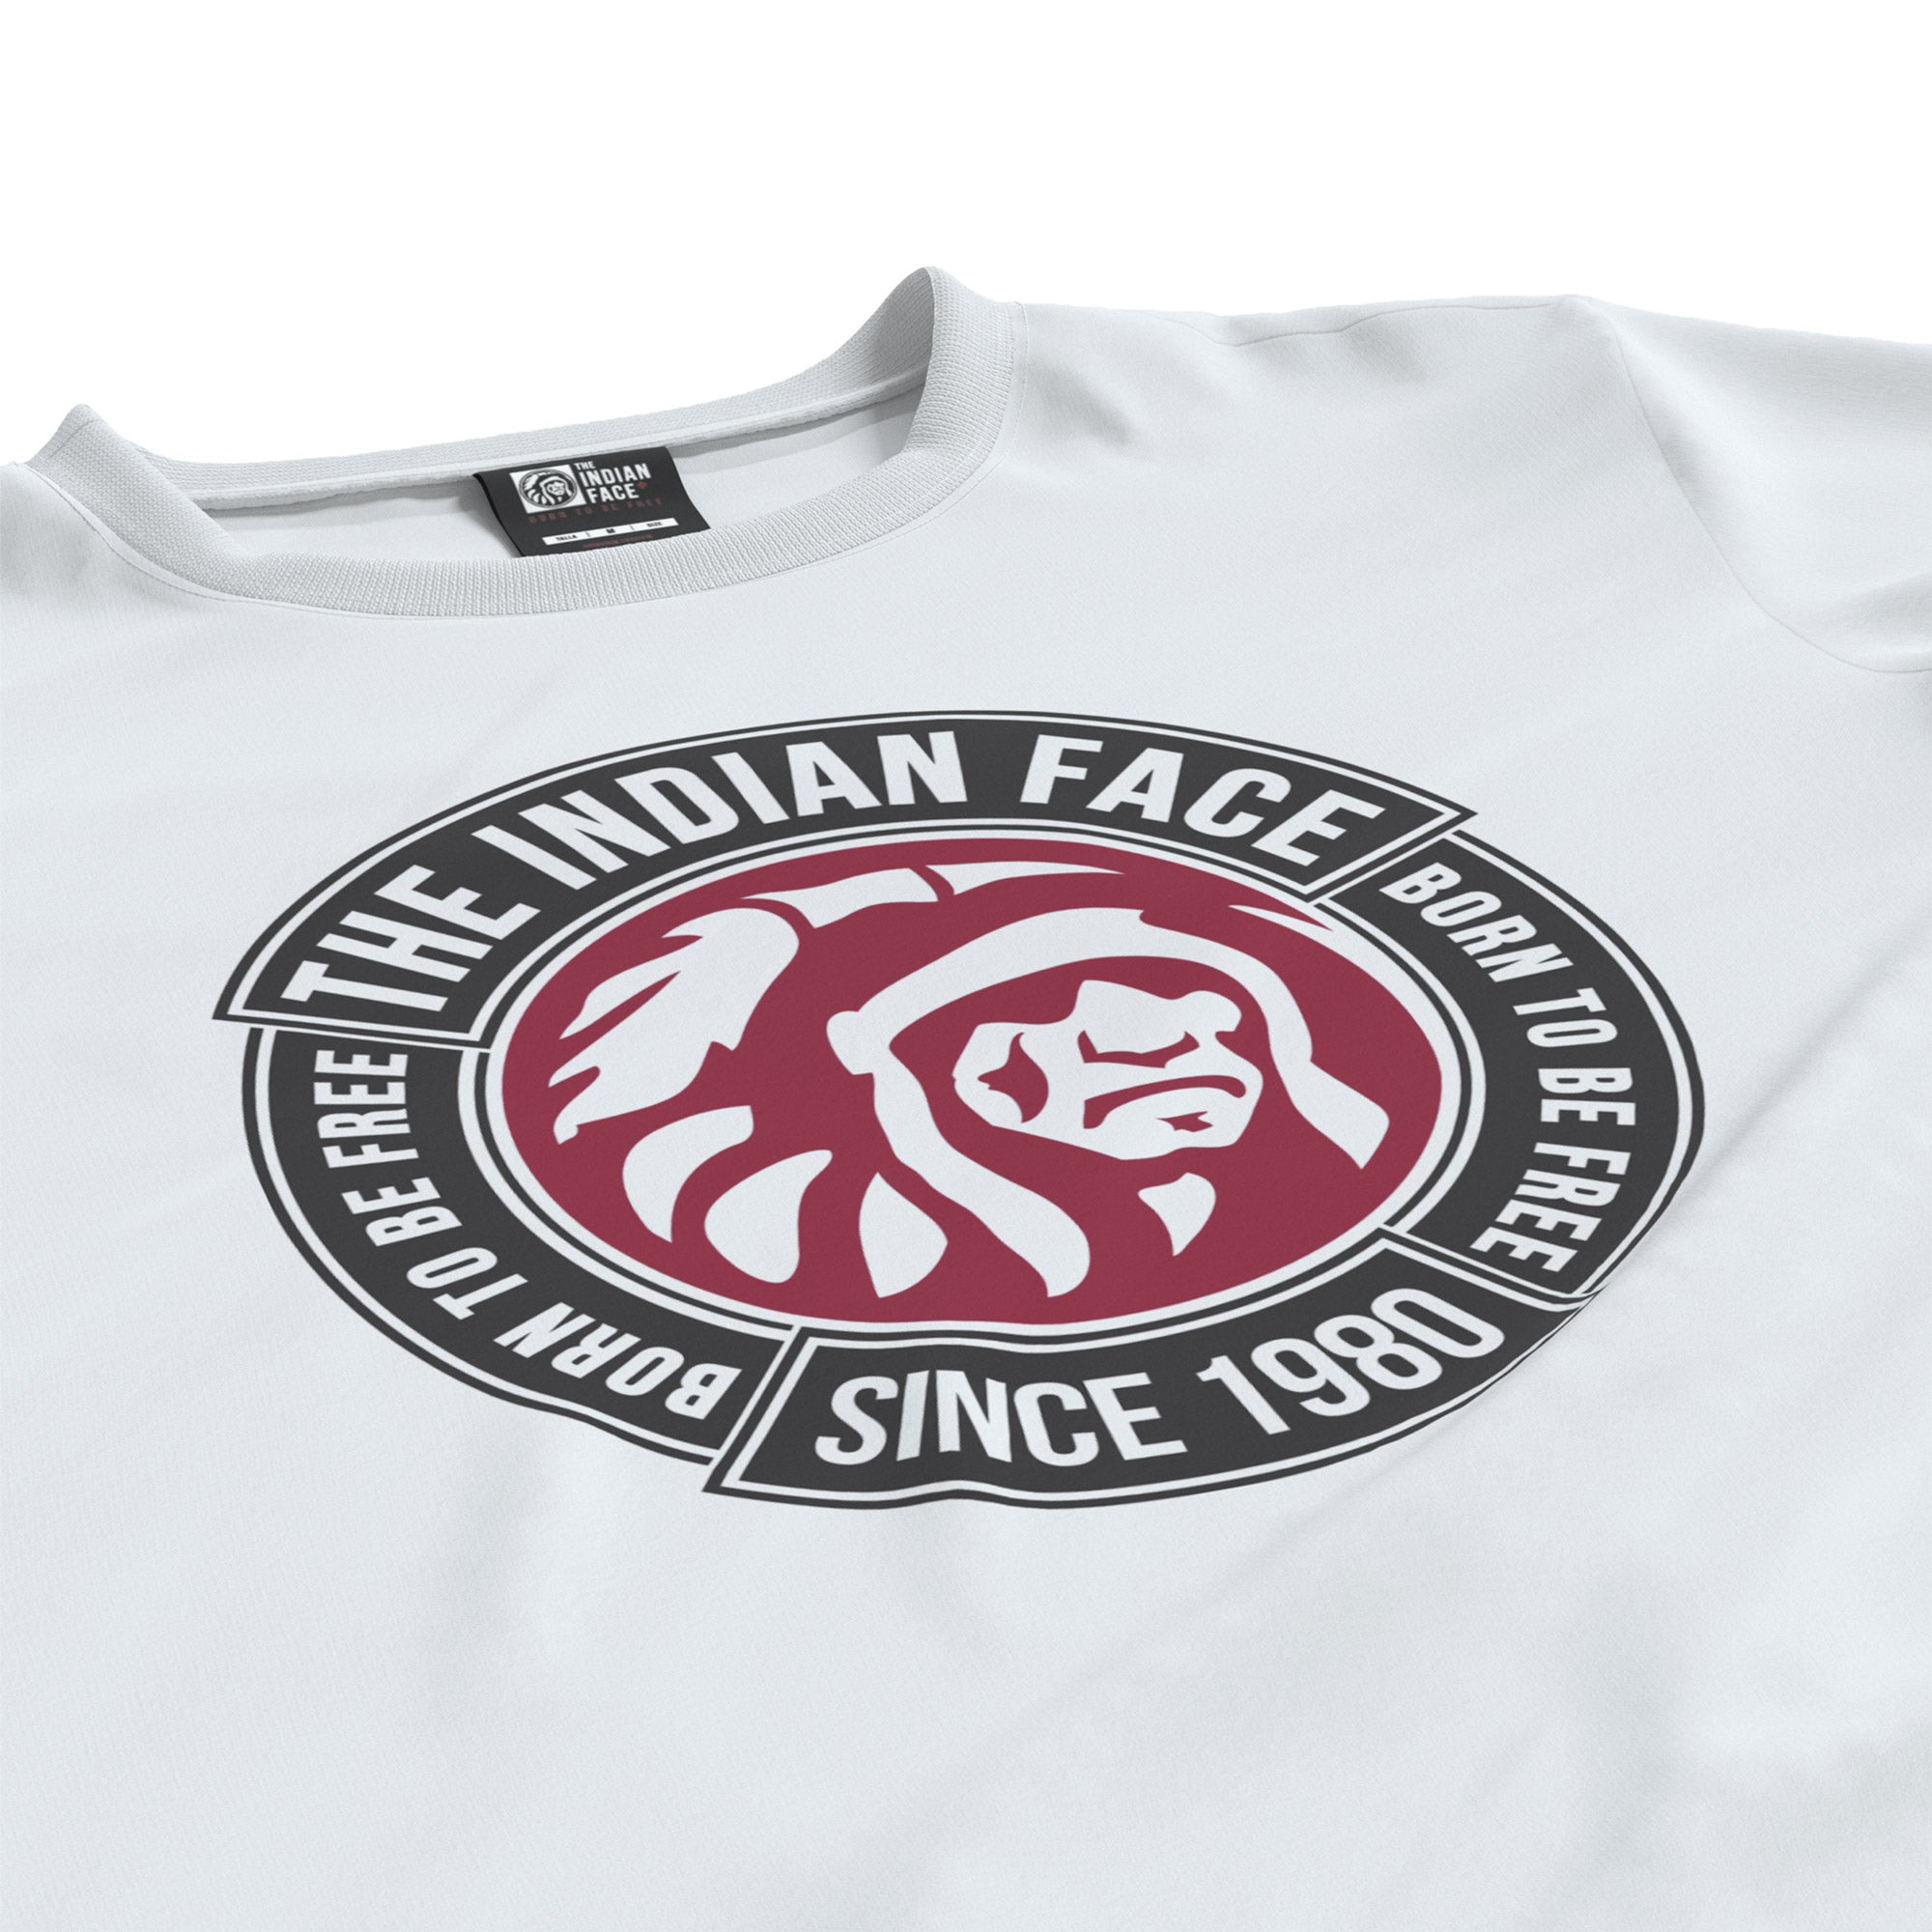 Camiseta The Indian Face Original